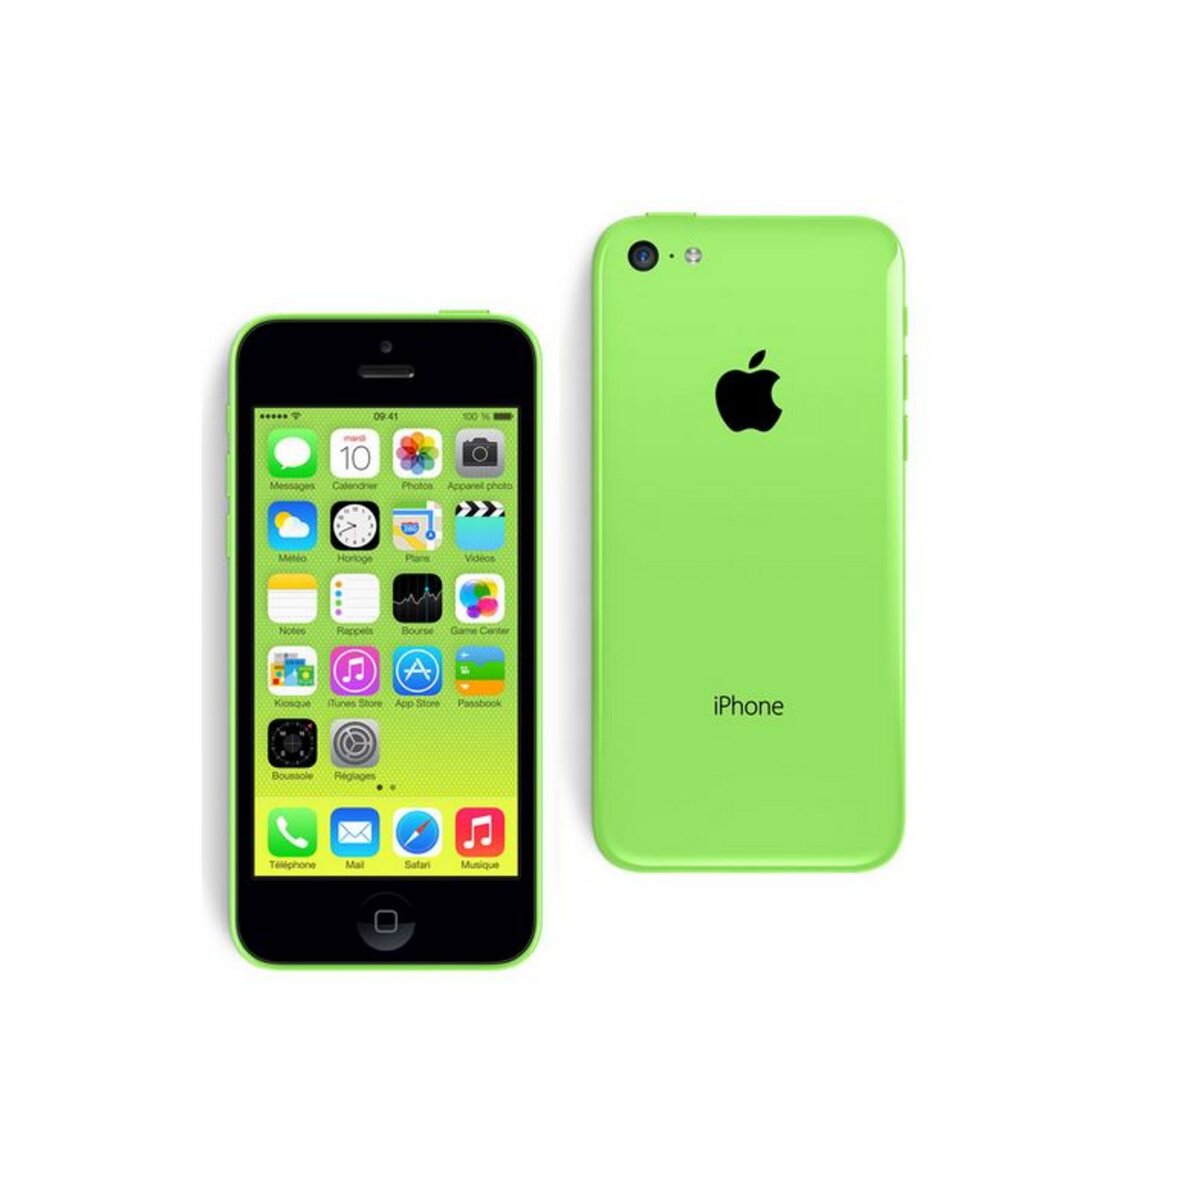 Apple iPhone 5C - Vert - Reconditionné Lagoona - Grade A - 8 Go